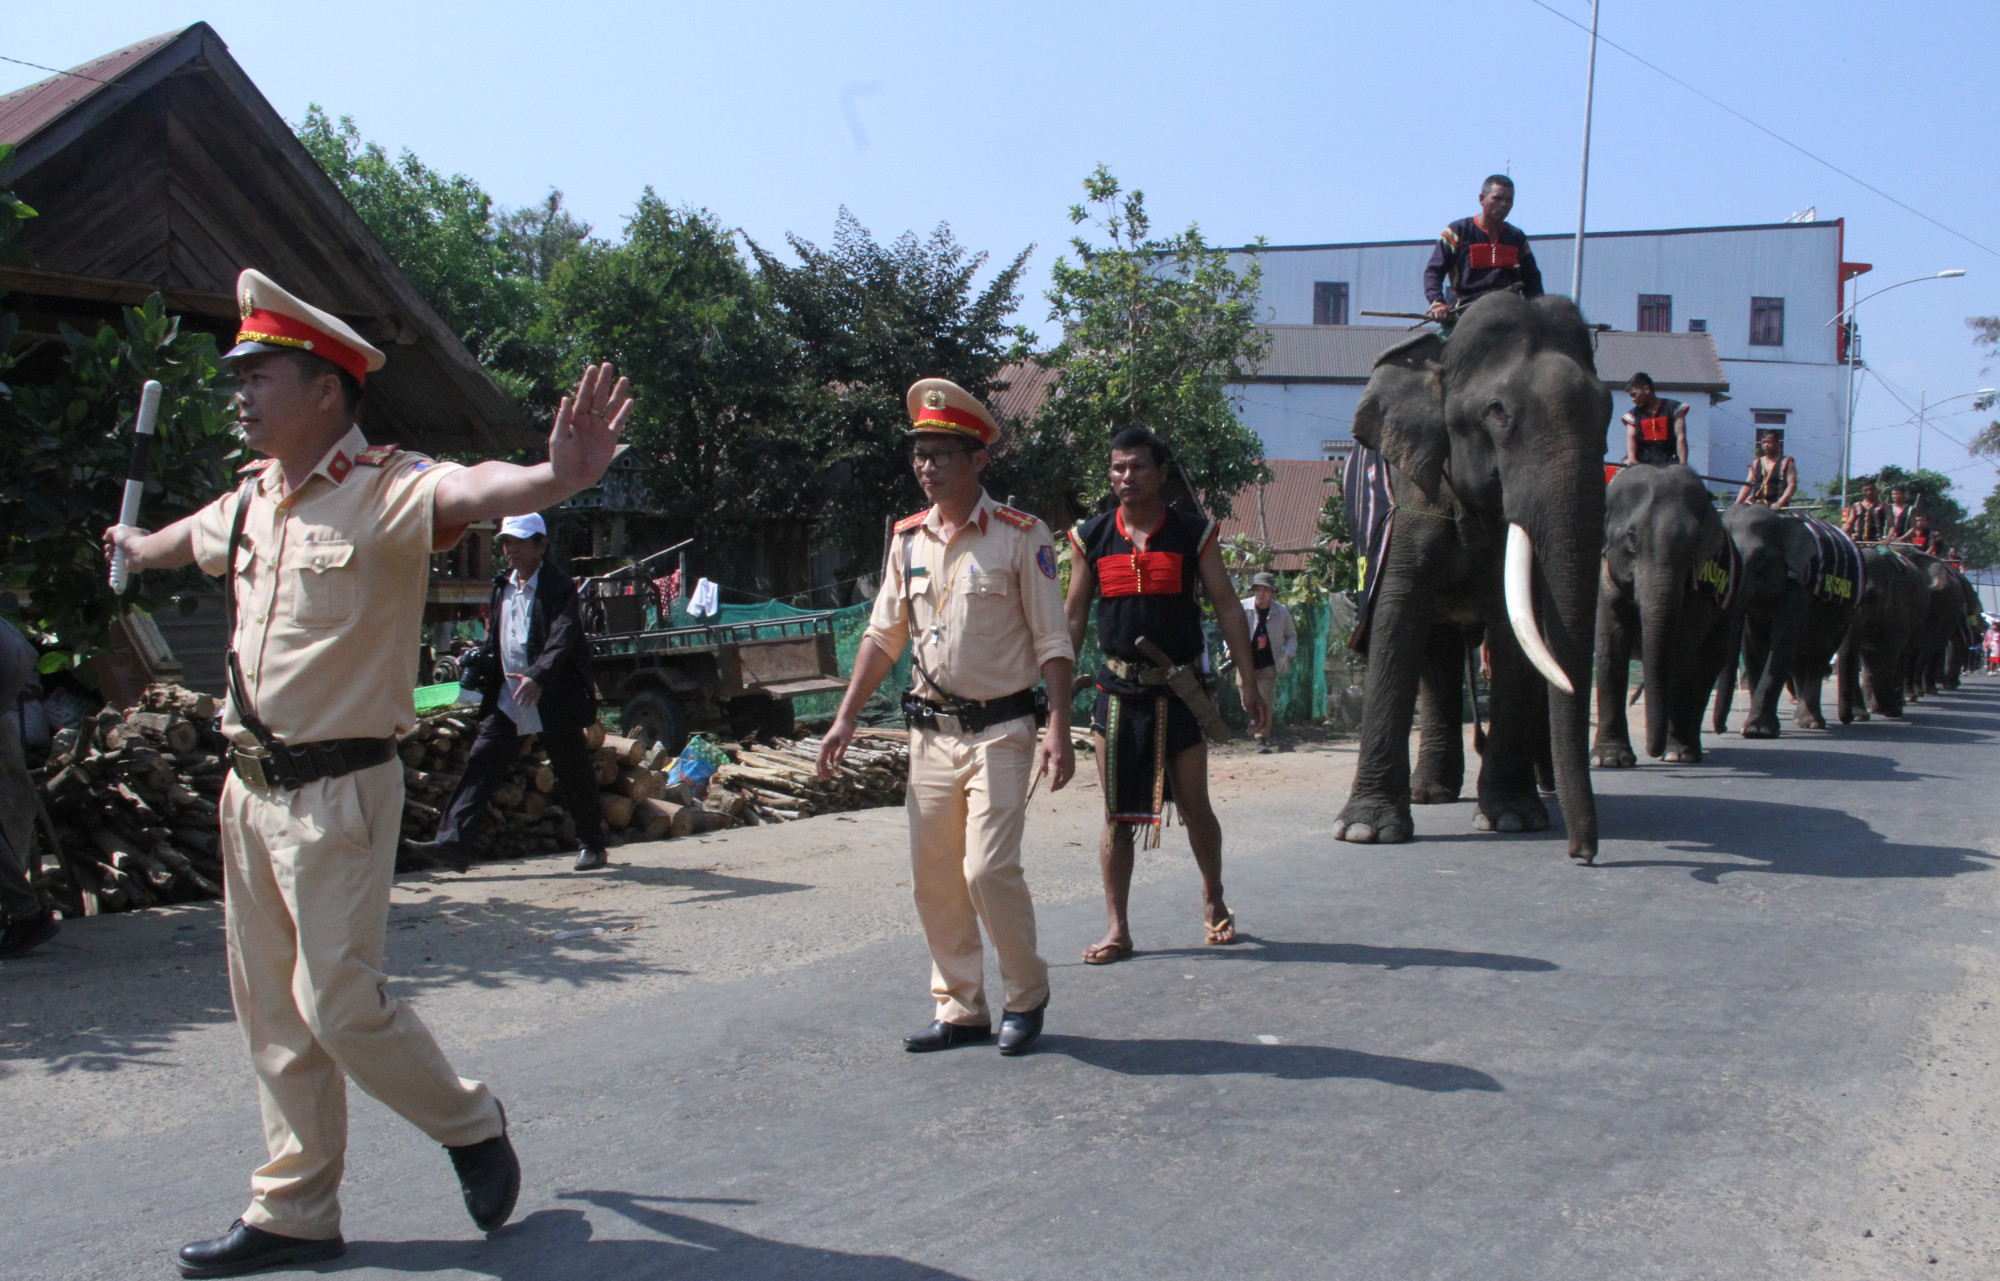 Ngay sau khi lễ cúng sức khỏe, đàn voi diễu hành trên đường để chào người dân và du khách.